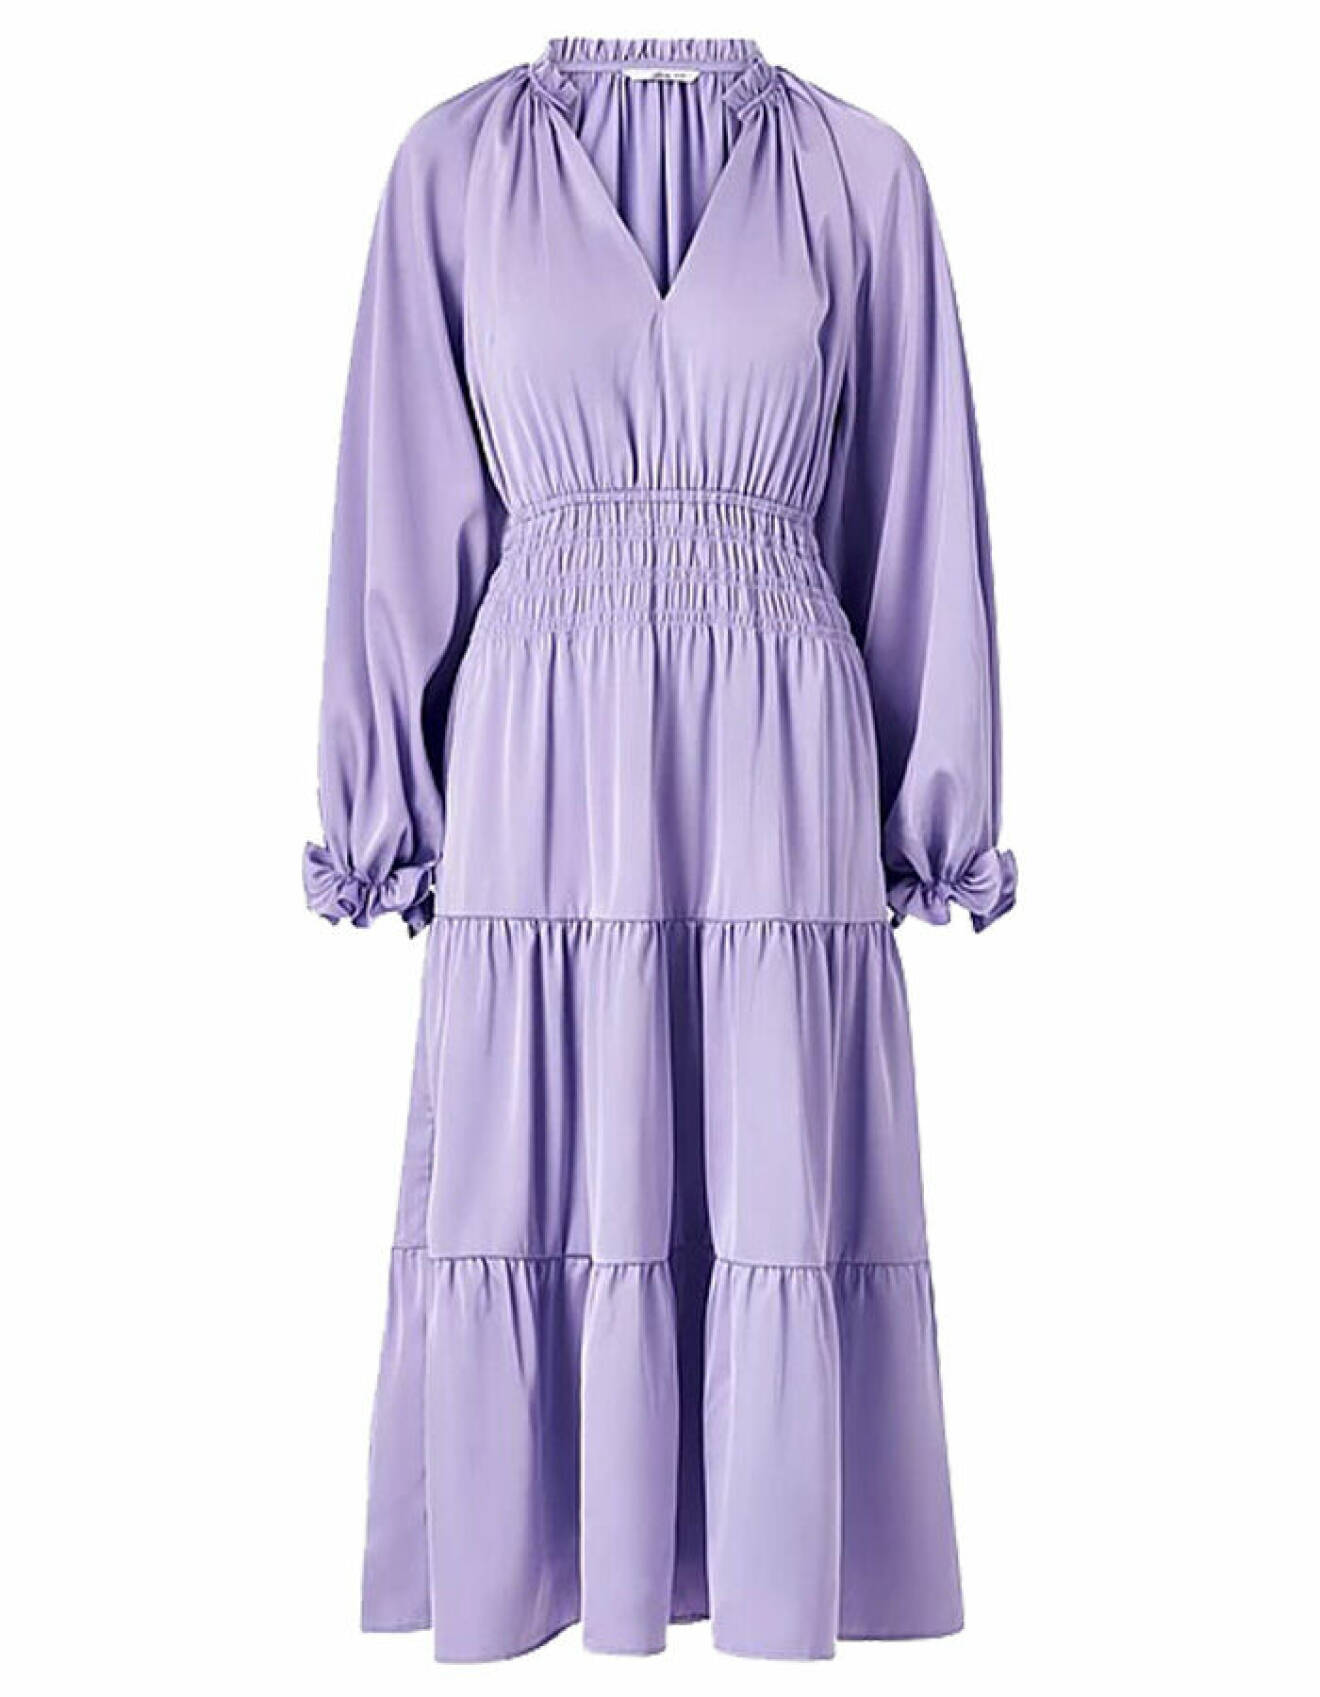 lila klänning i satin med smock i midjan från ellos för klädkoden mörk kostym